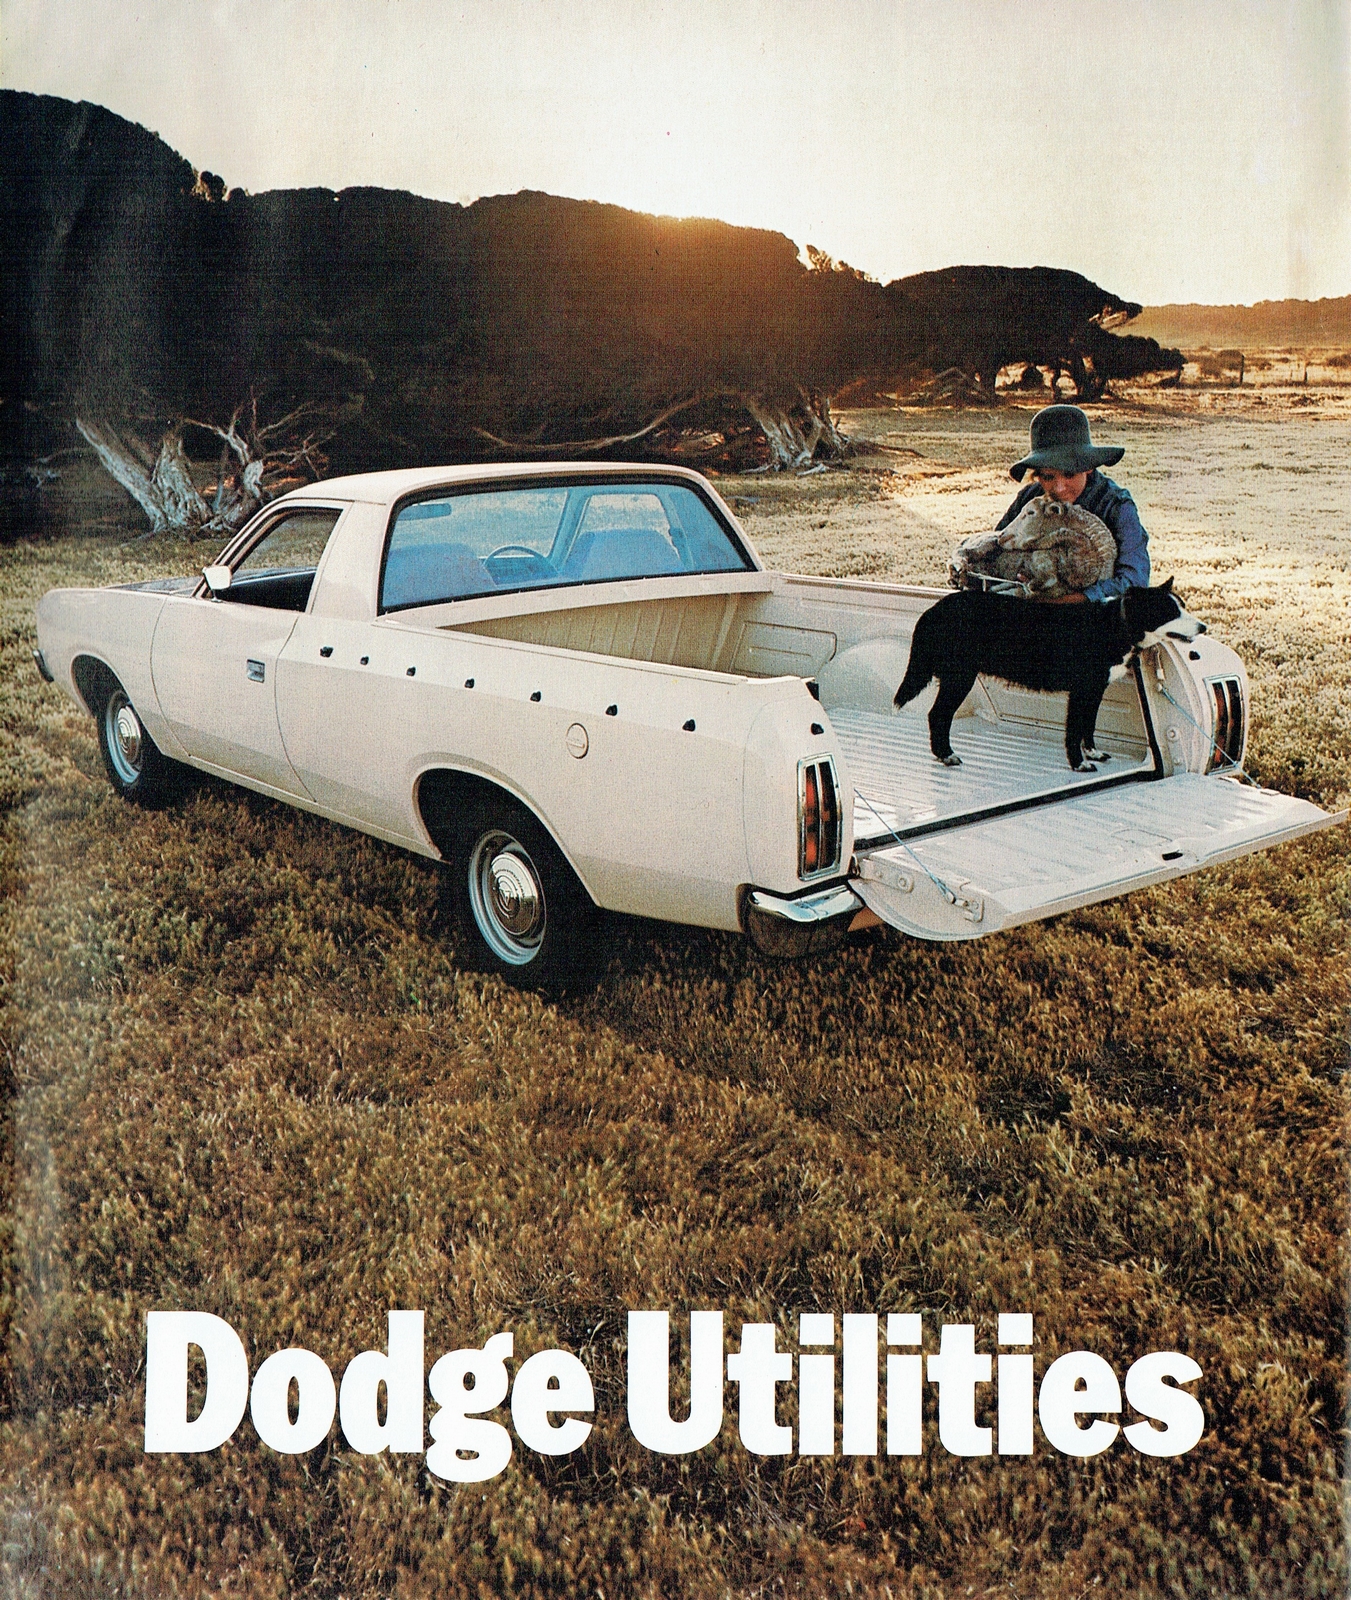 n_1975 Dodge VK Utilities-01.jpg